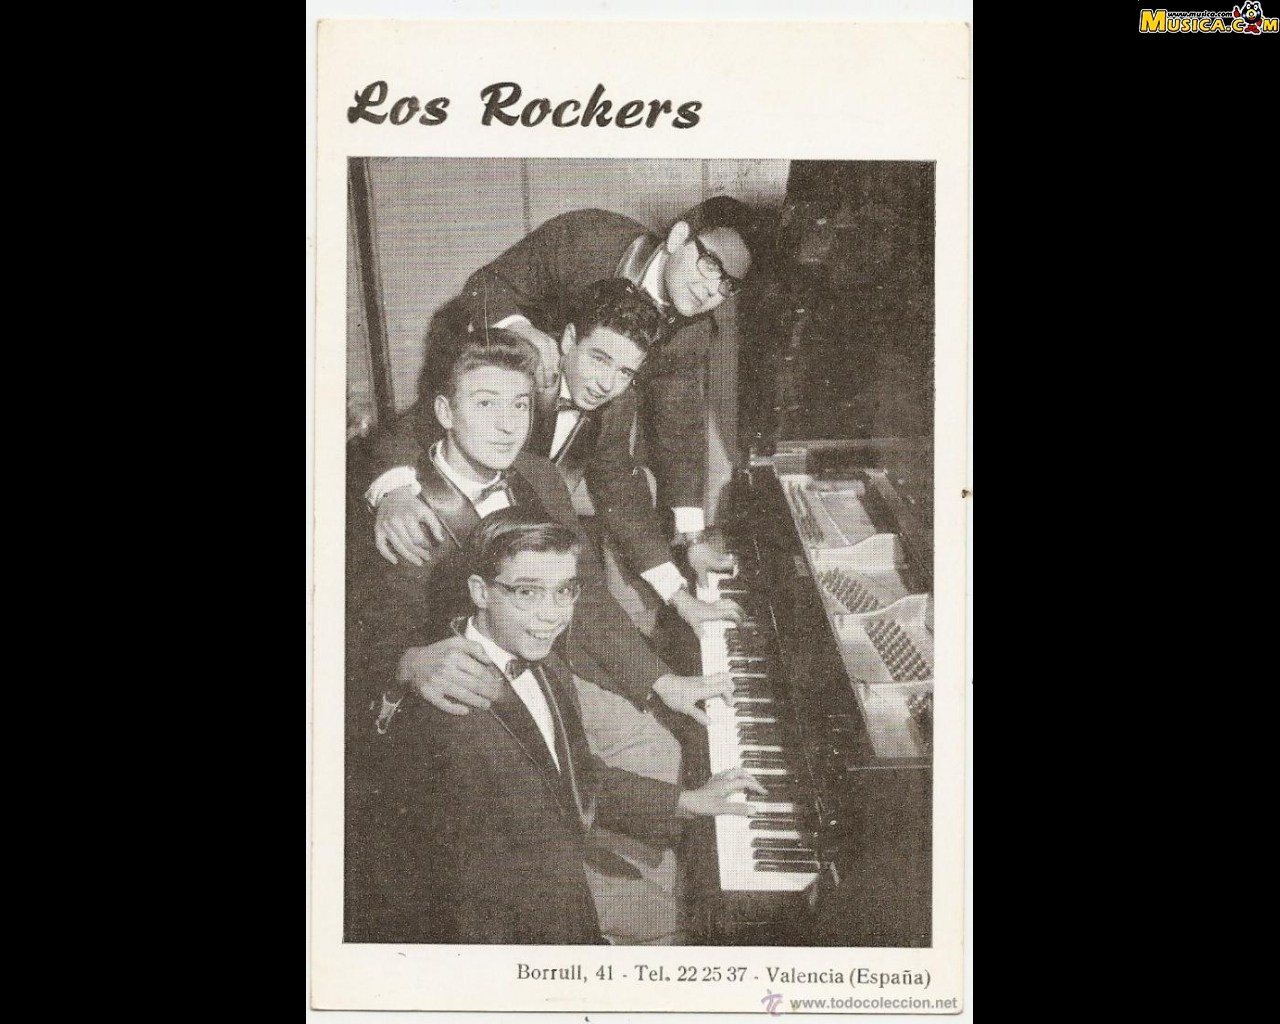 Fondo de pantalla de Los Rockers